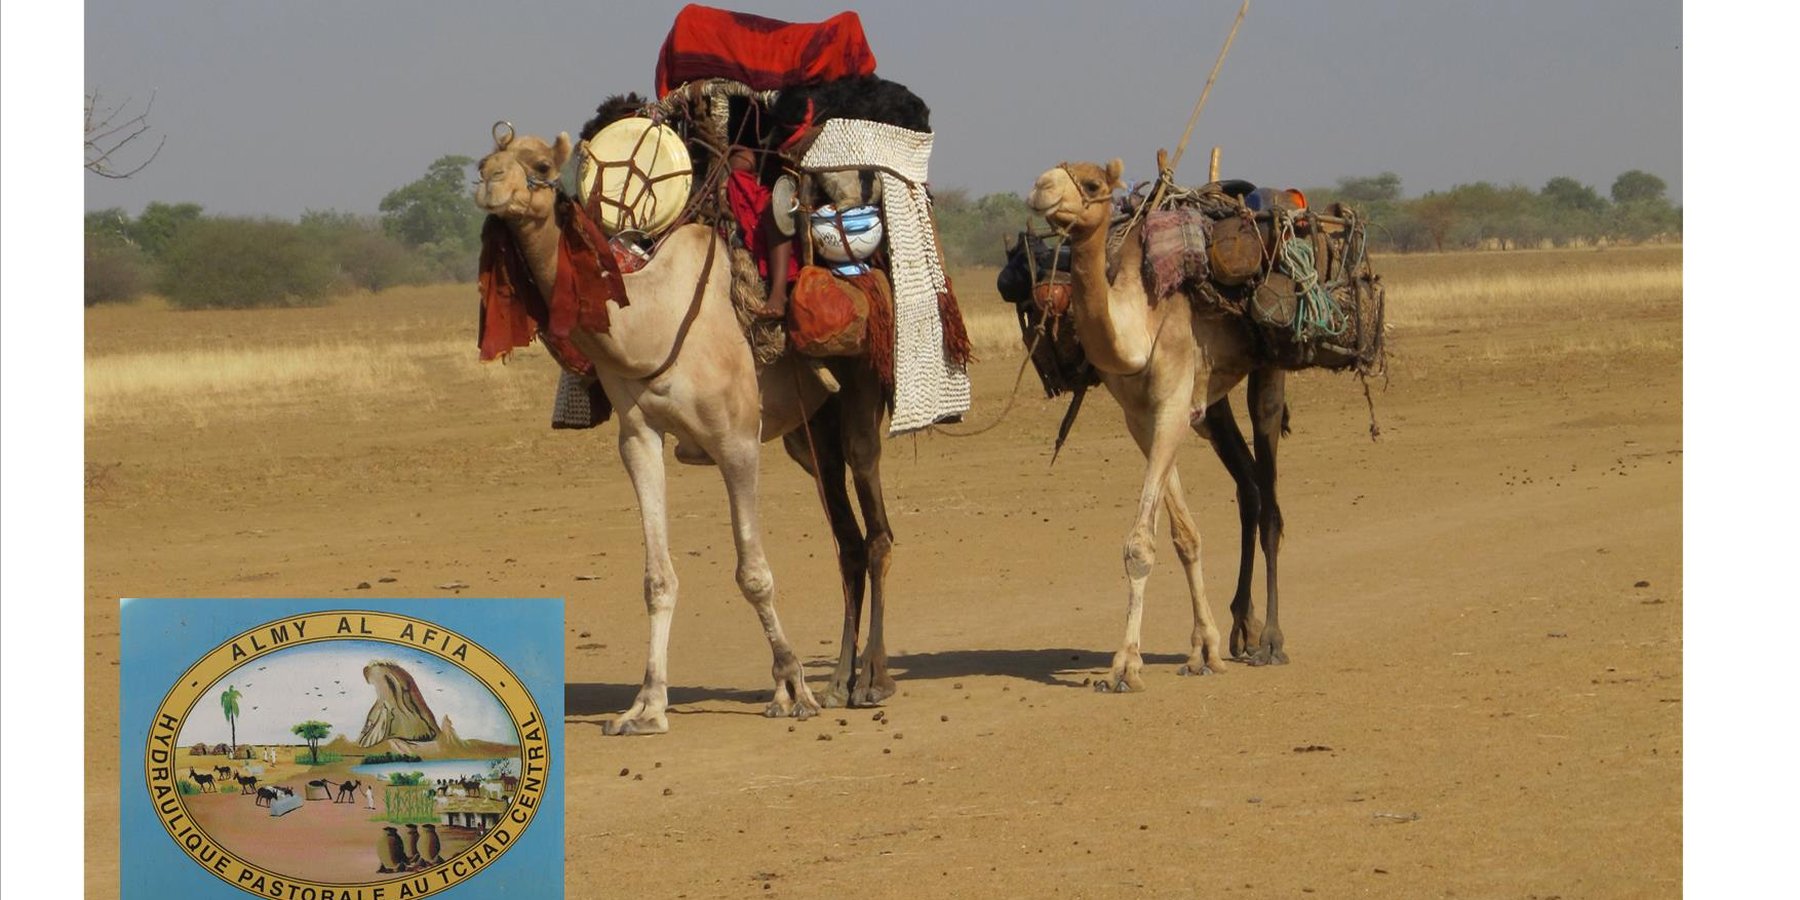 Camp of Arab camel herders during their seasonal migration